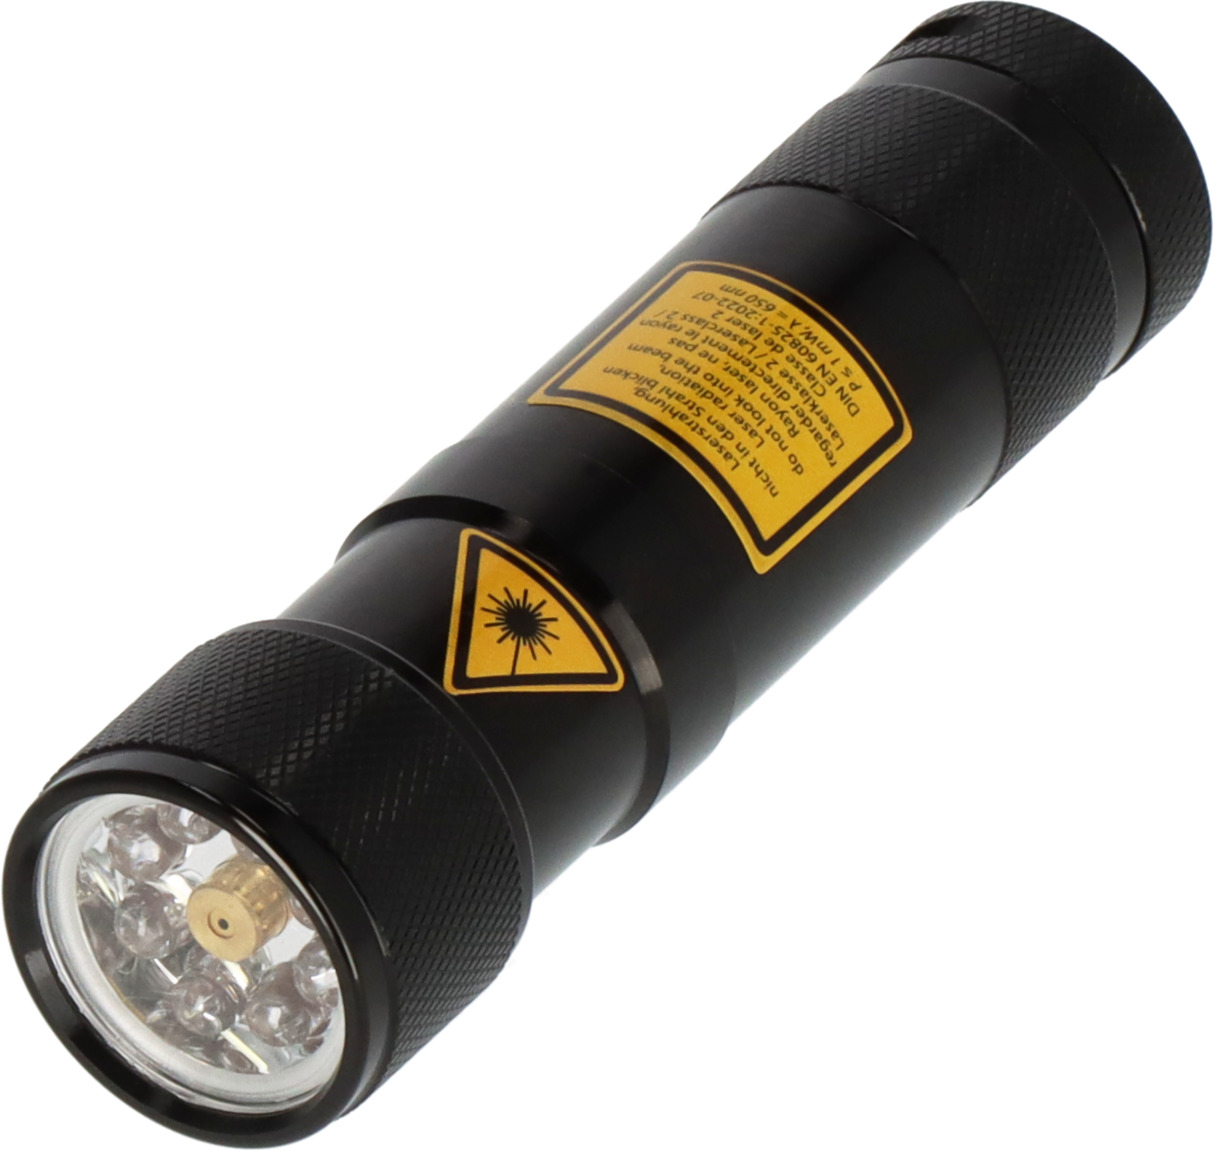 Lampe de poche LED Eco FL Duo 50lm alimentée par piles